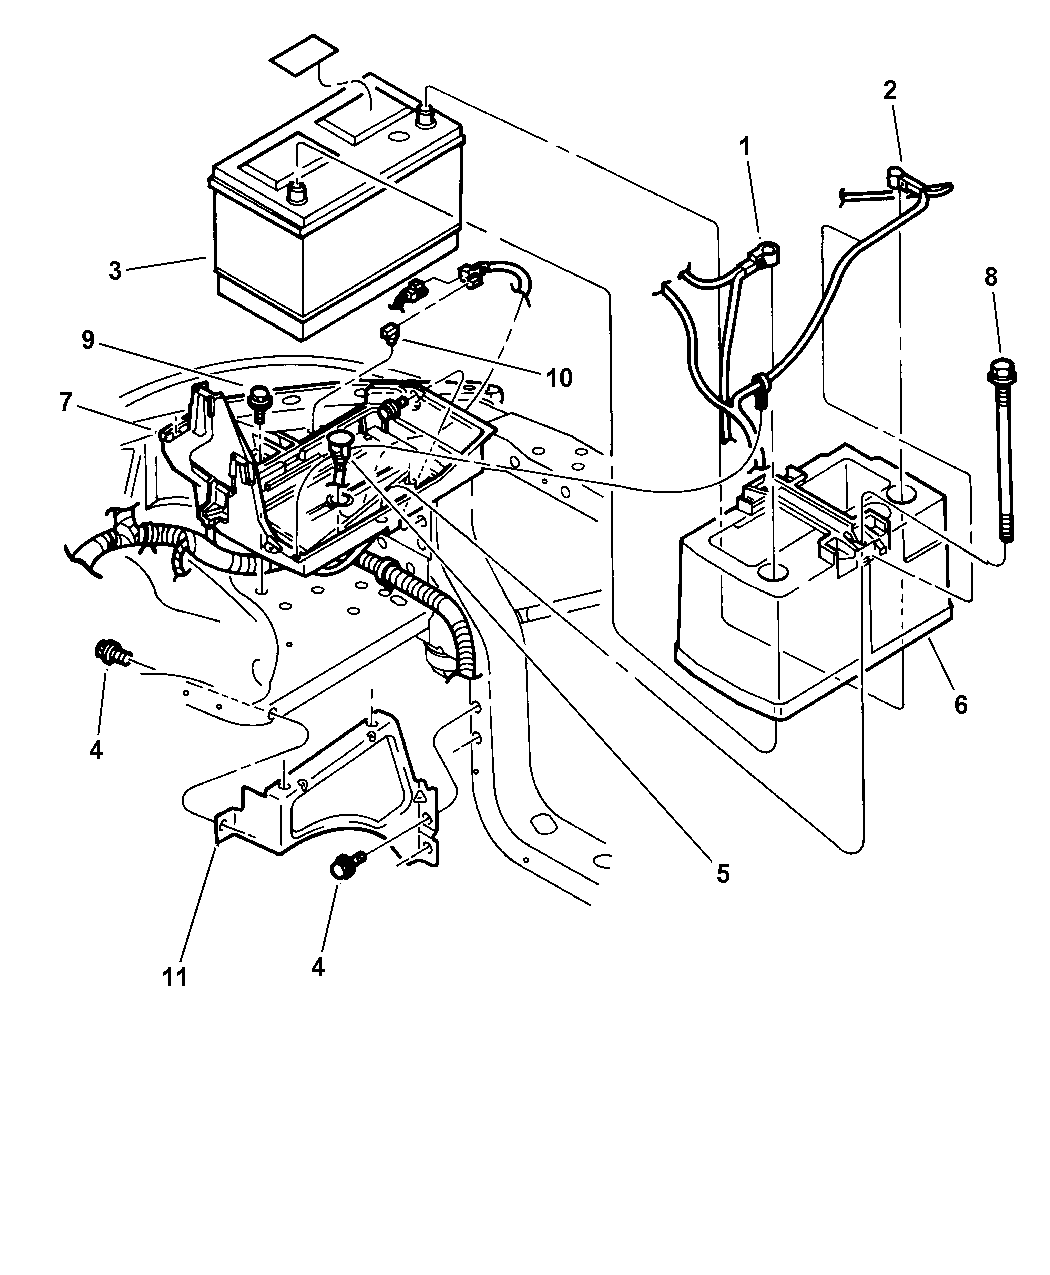 Wiring Diagram Dodge Durango 2002 - Complete Wiring Schemas